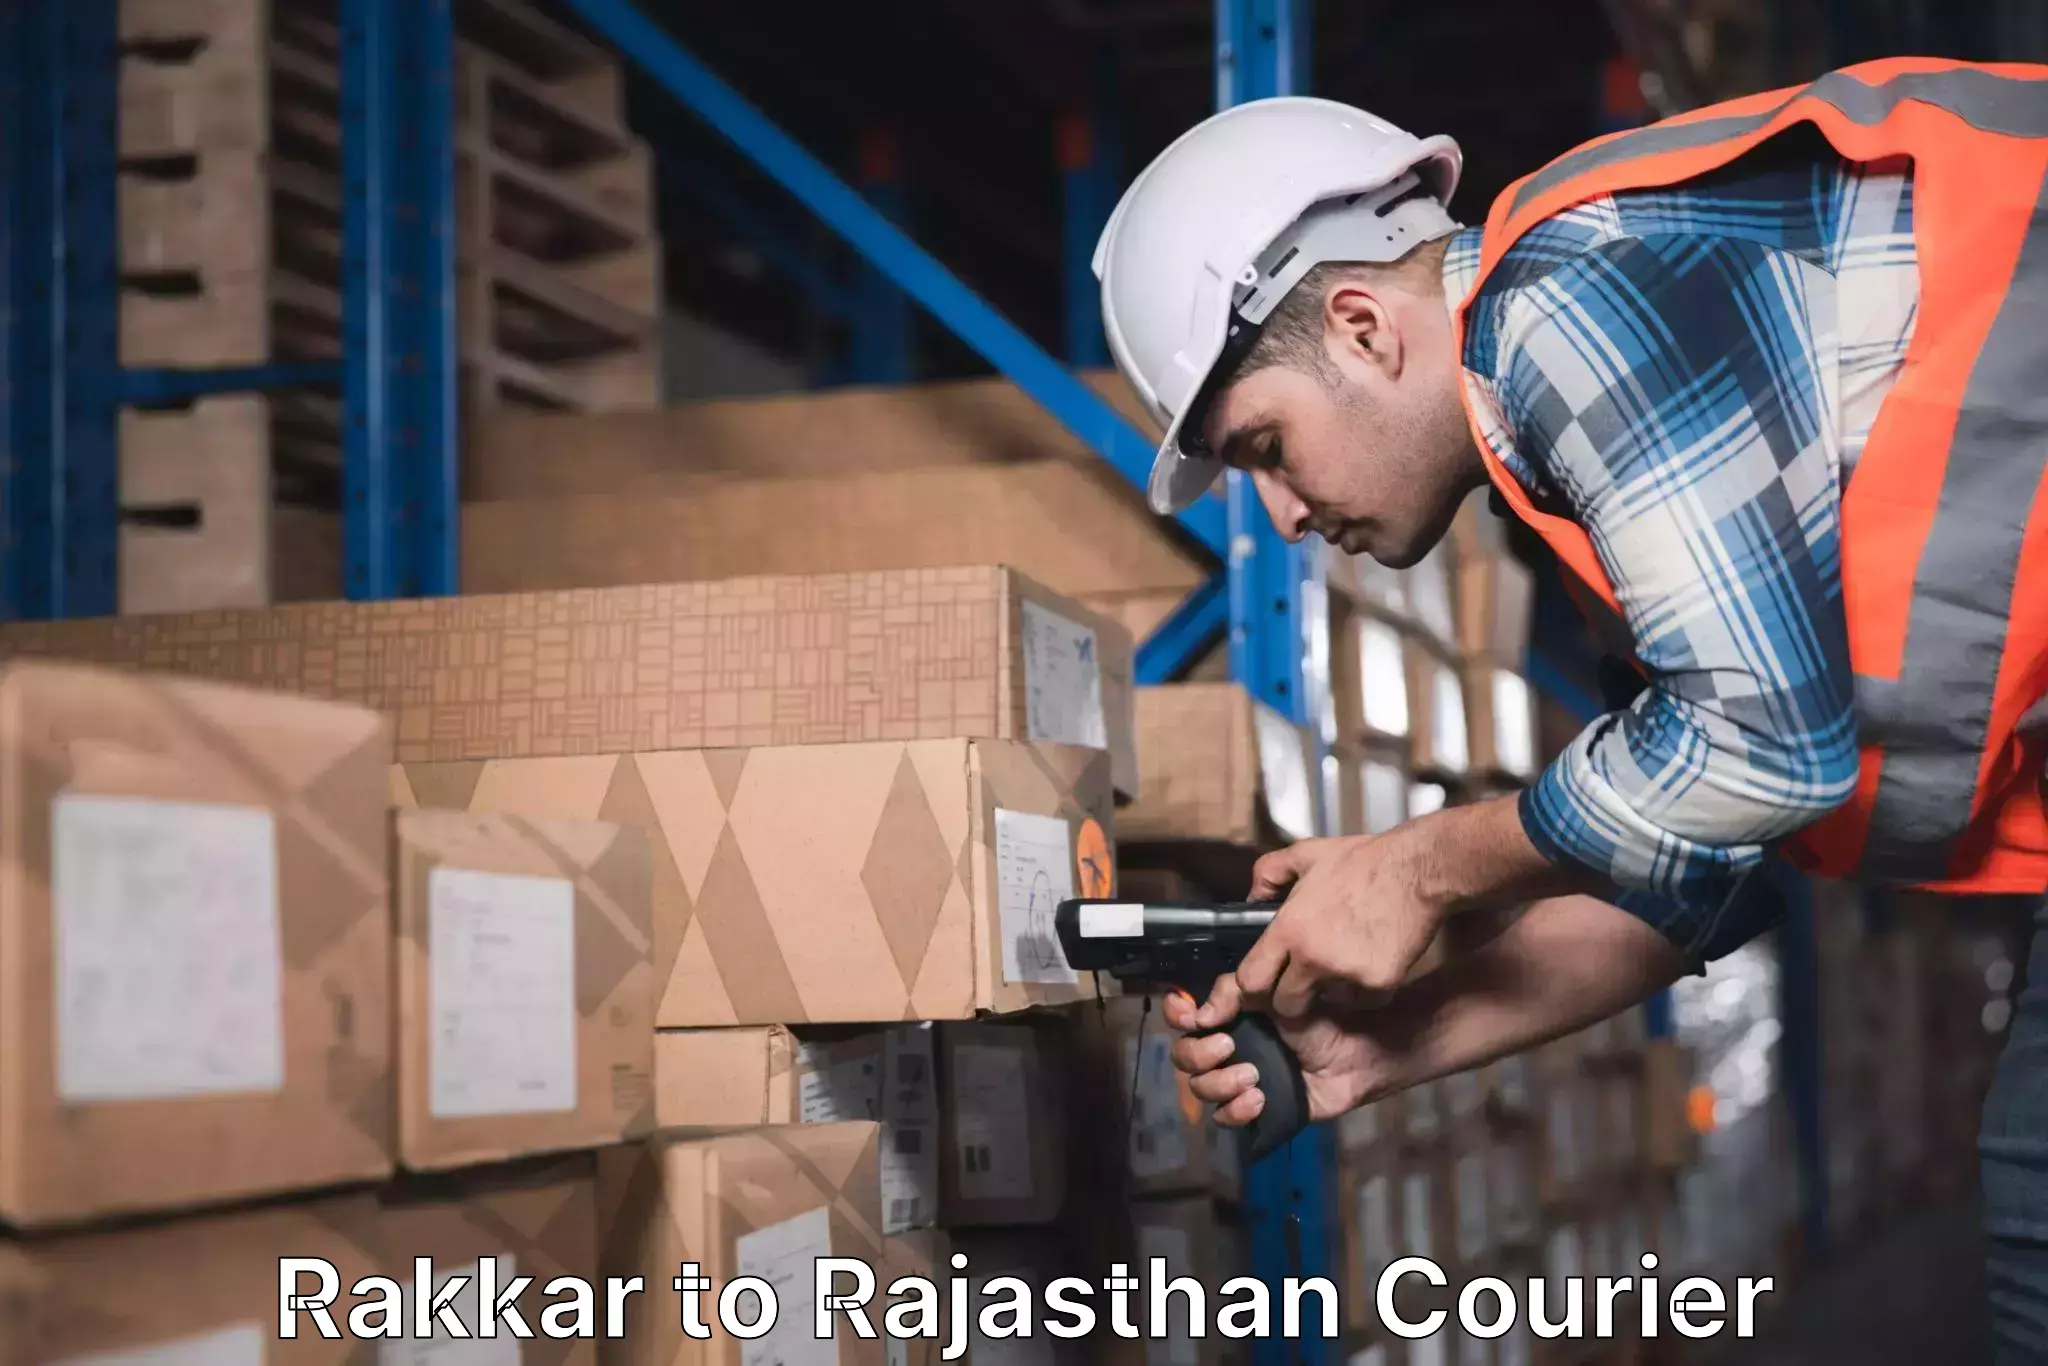 Holiday shipping services Rakkar to Rajasthan